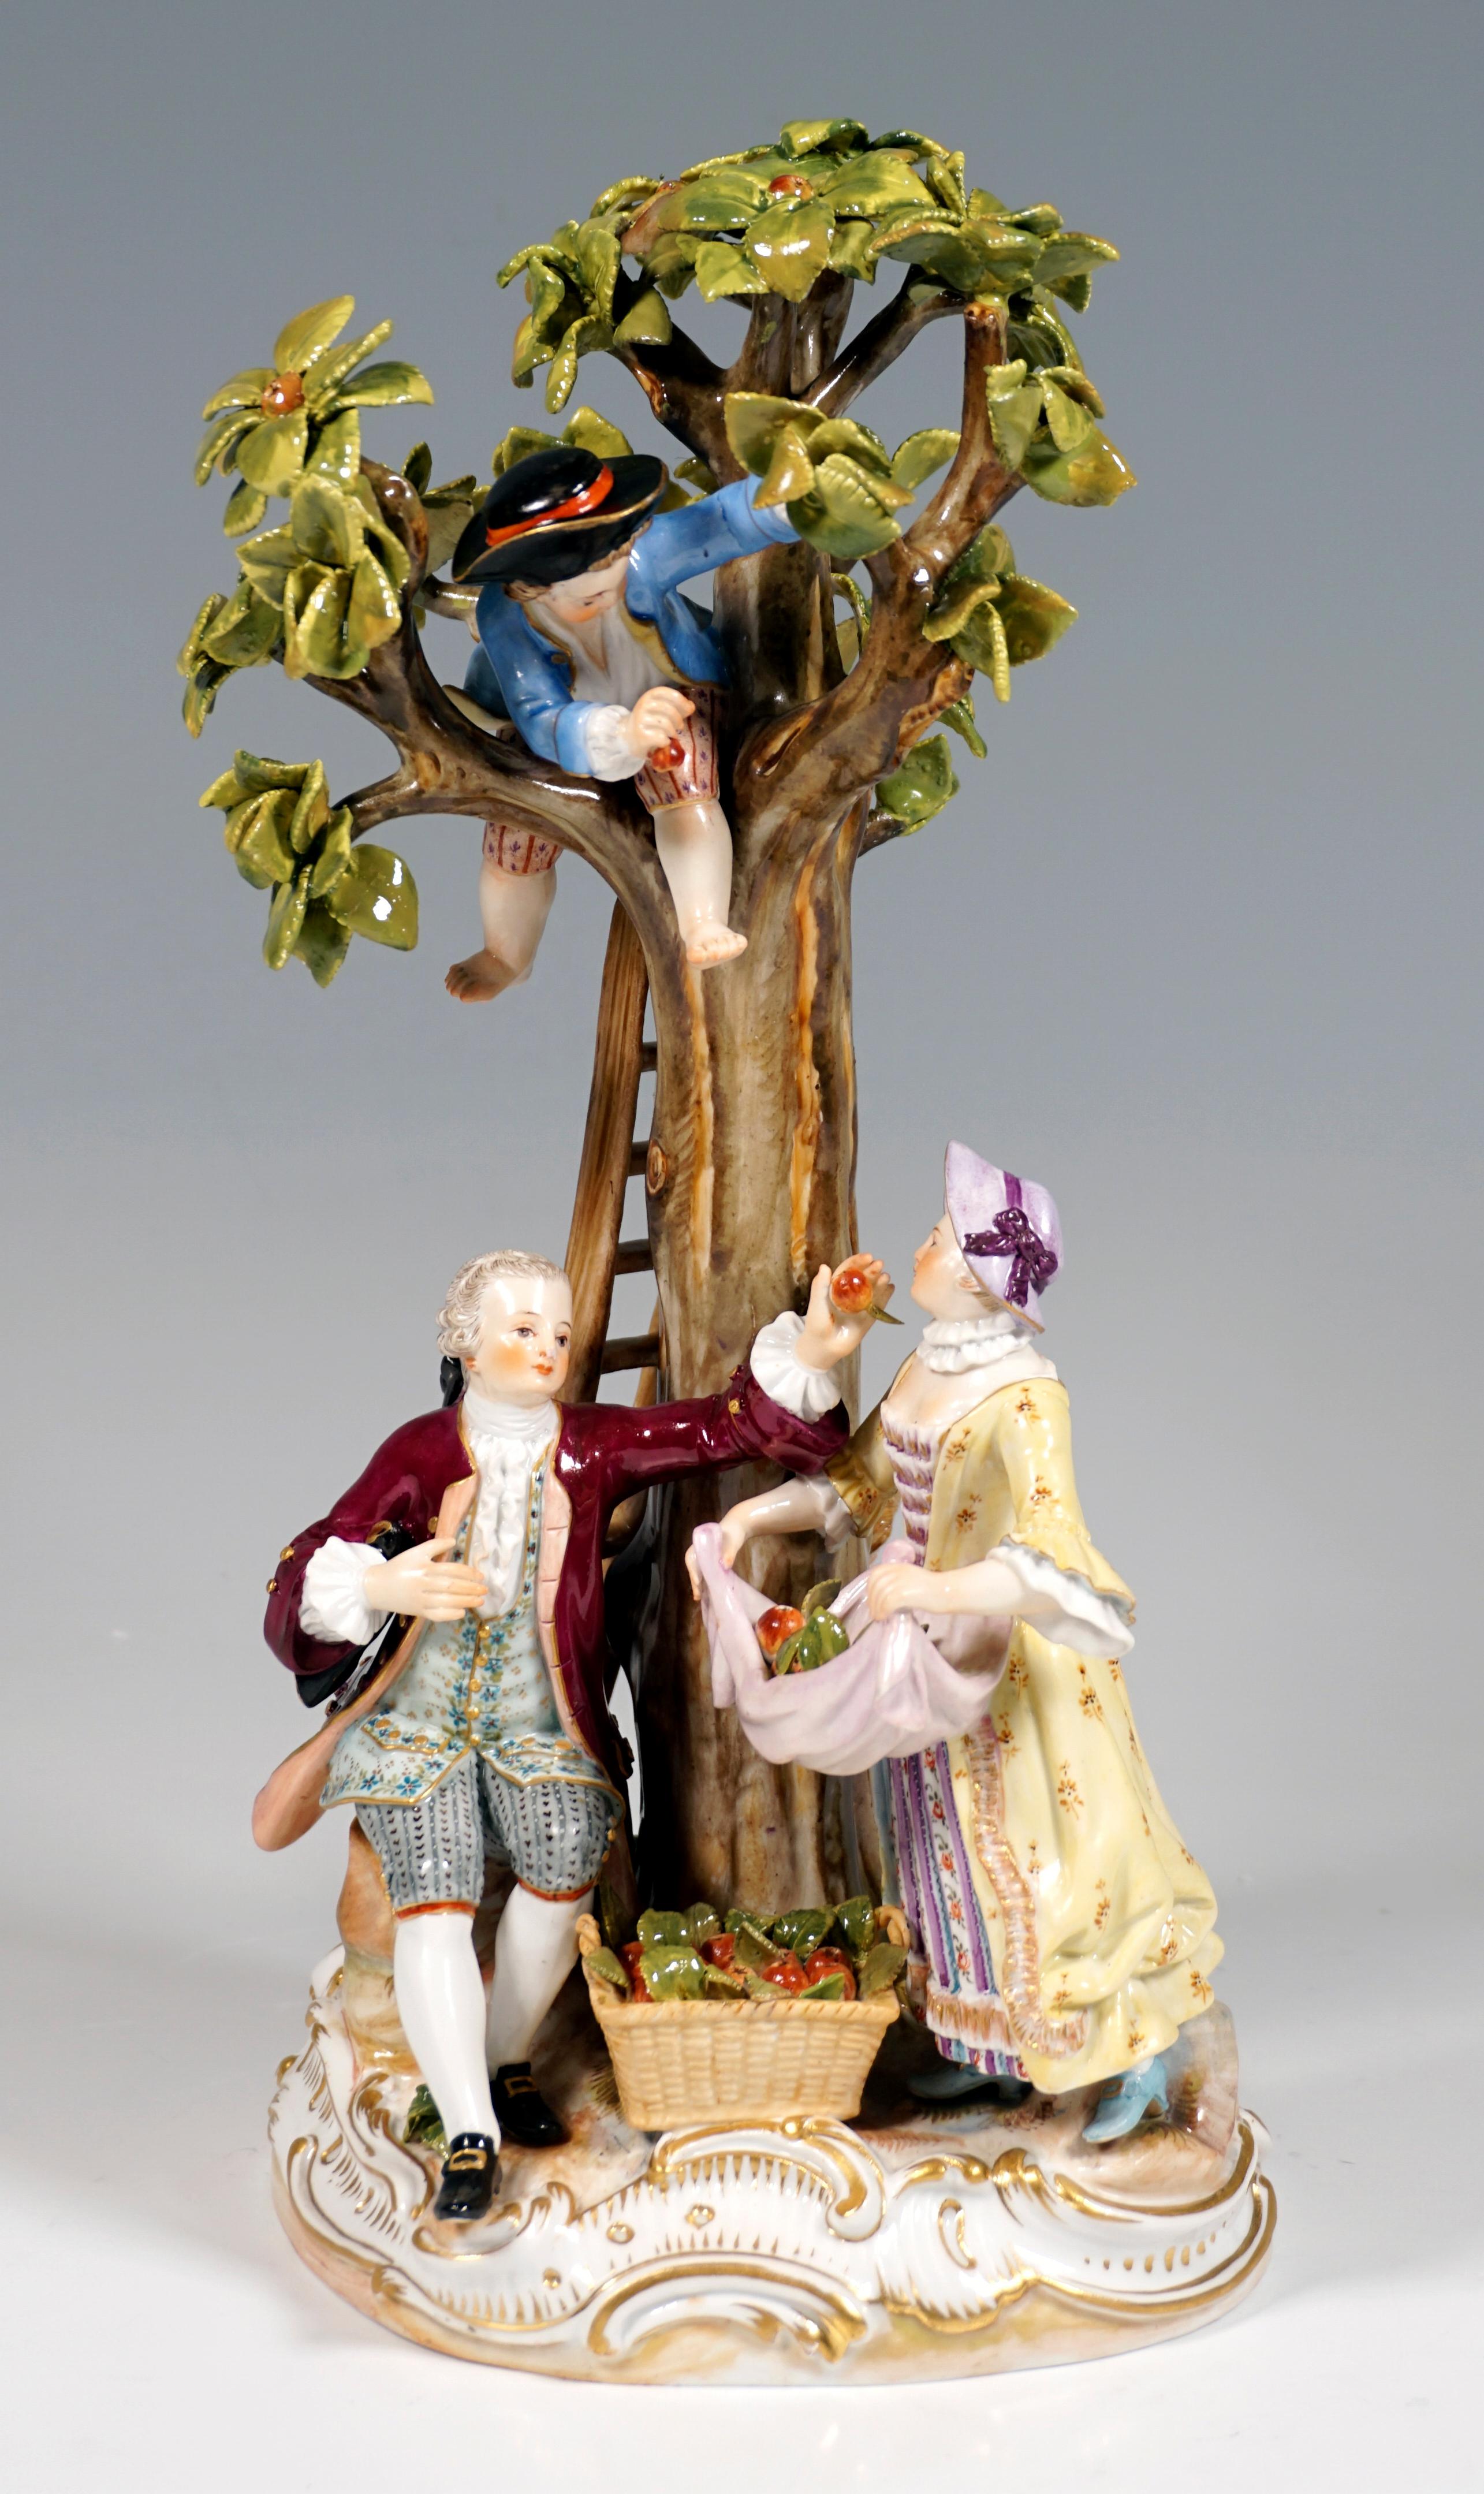 Groupe en porcelaine du XIXe siècle, de fabrication élaborée :
Un couple de jardiniers et deux garçons récoltant des pommes, vêtus de robes rococo rurales aux décorations raffinées, un garçon debout à l'extrémité supérieure de l'échelle s'appuyant